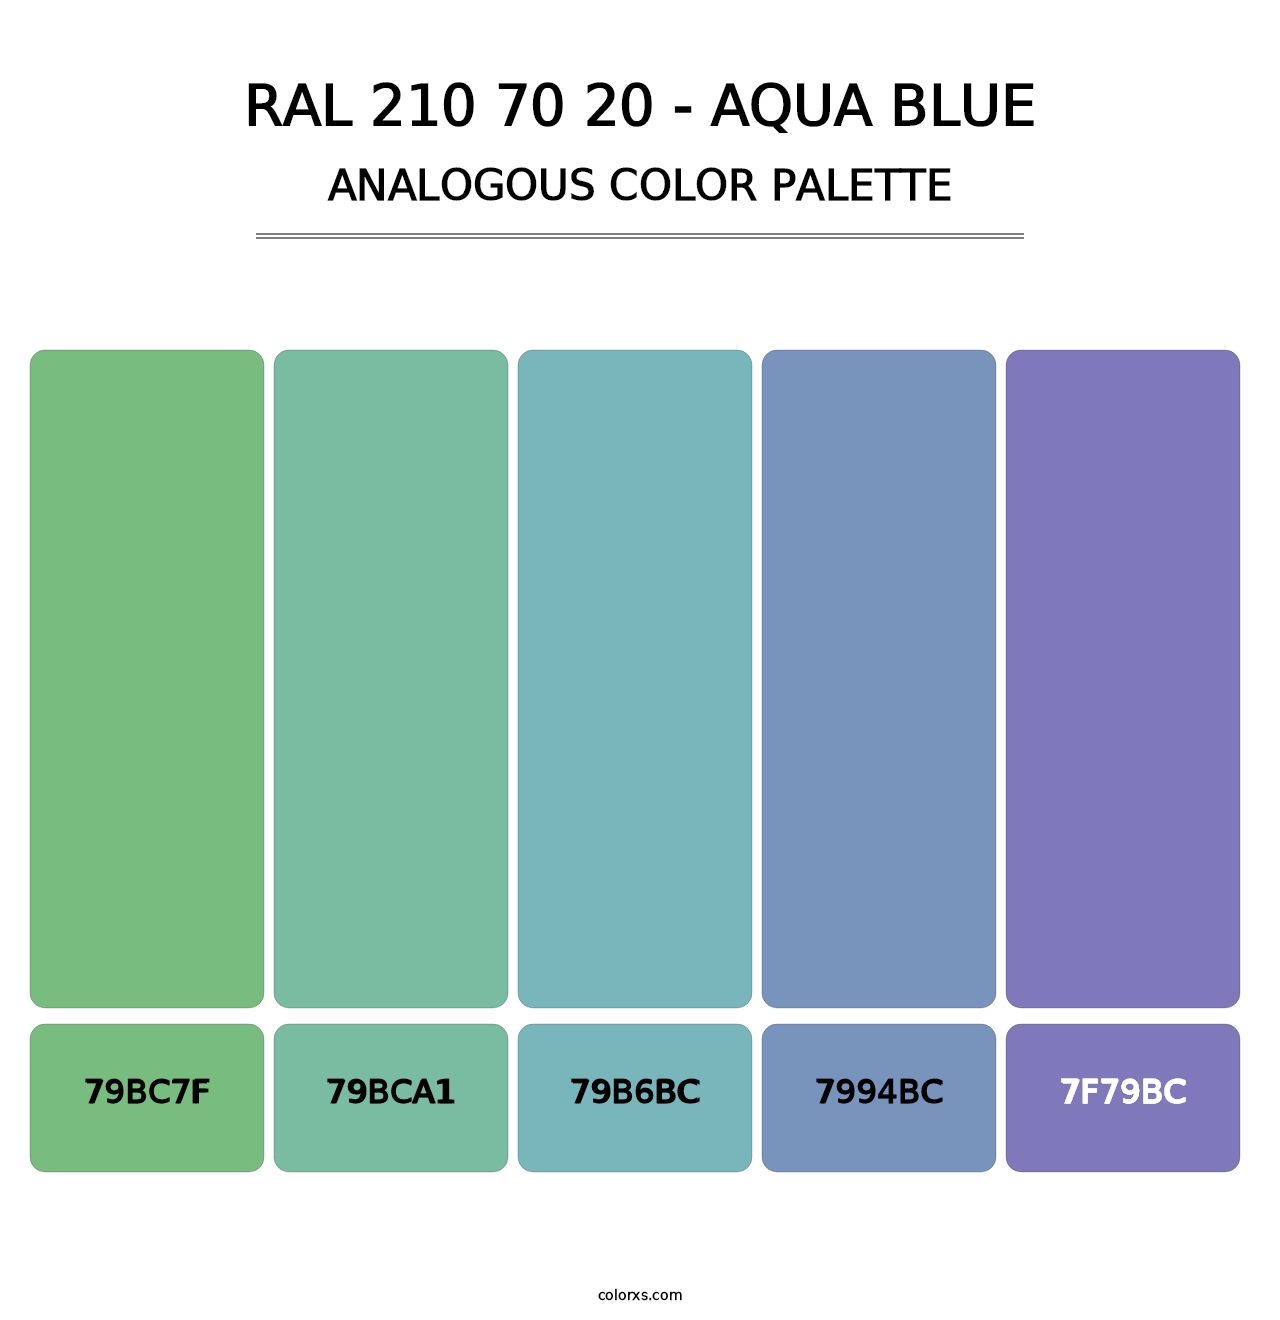 RAL 210 70 20 - Aqua Blue - Analogous Color Palette